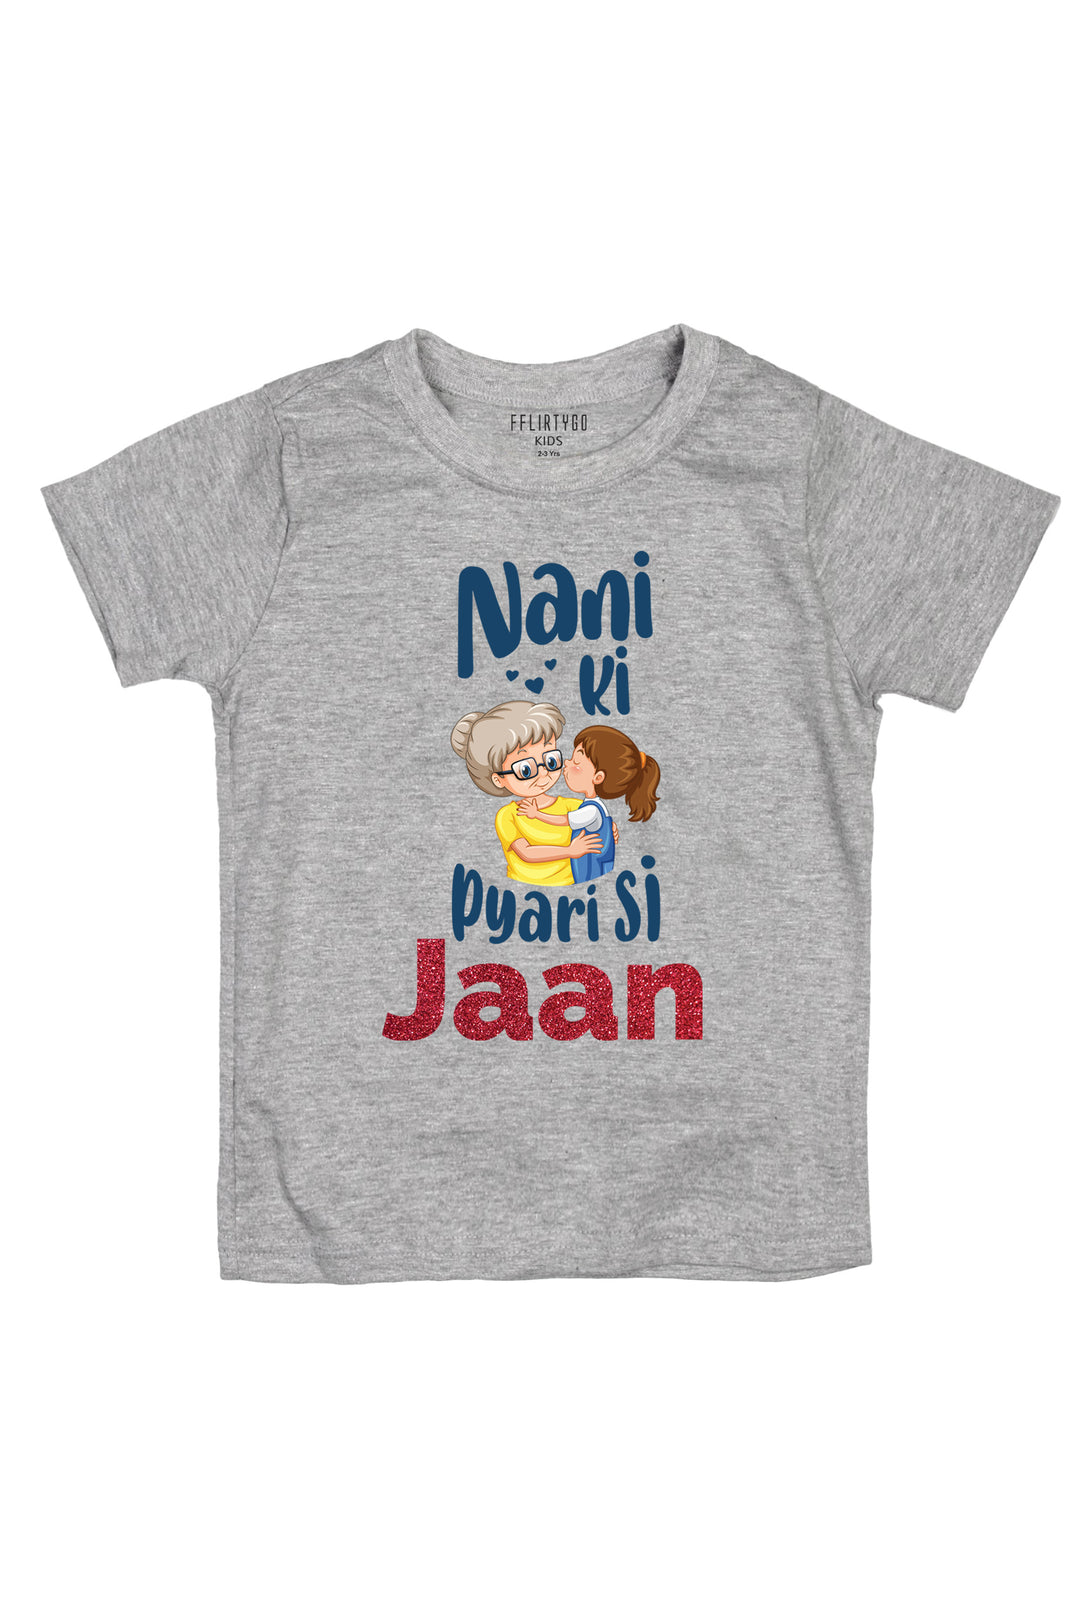 Nani Ki Pyari Si Jaan